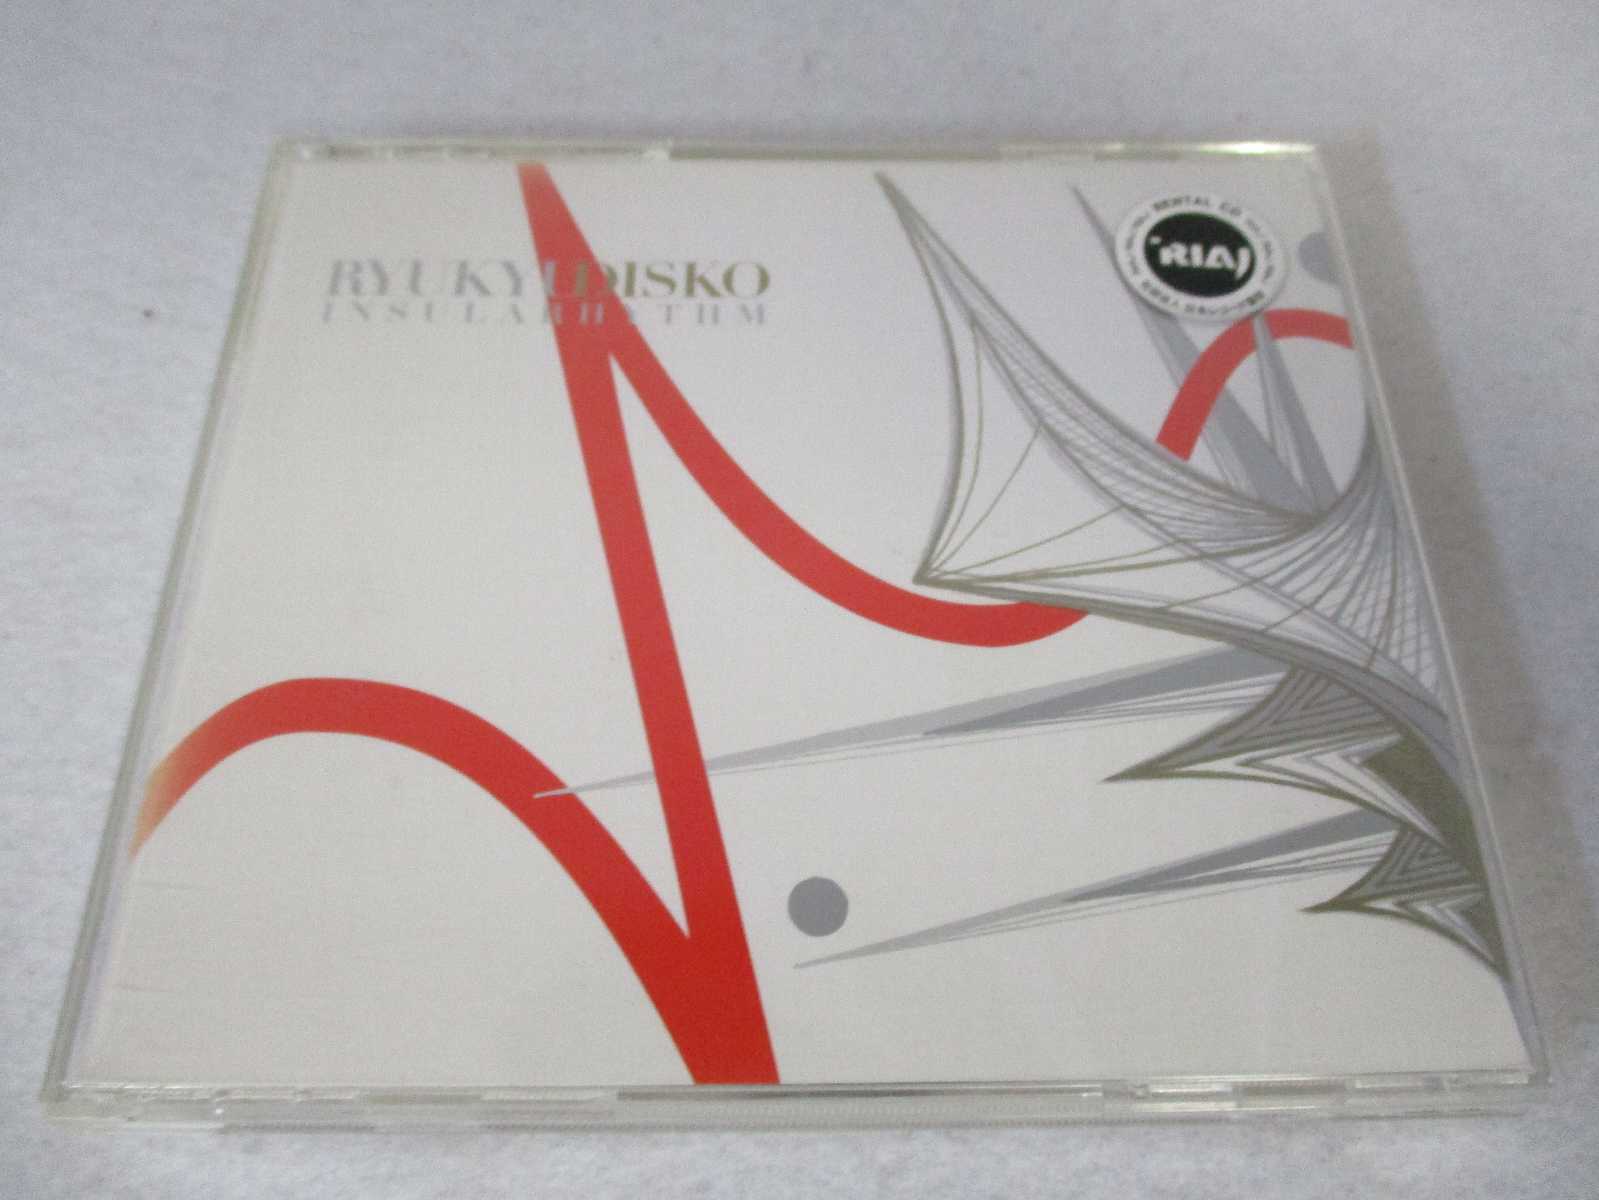 AC00689 【中古】 【CD】 RYUKYUDISKO INSULARHYTHM/V.A.